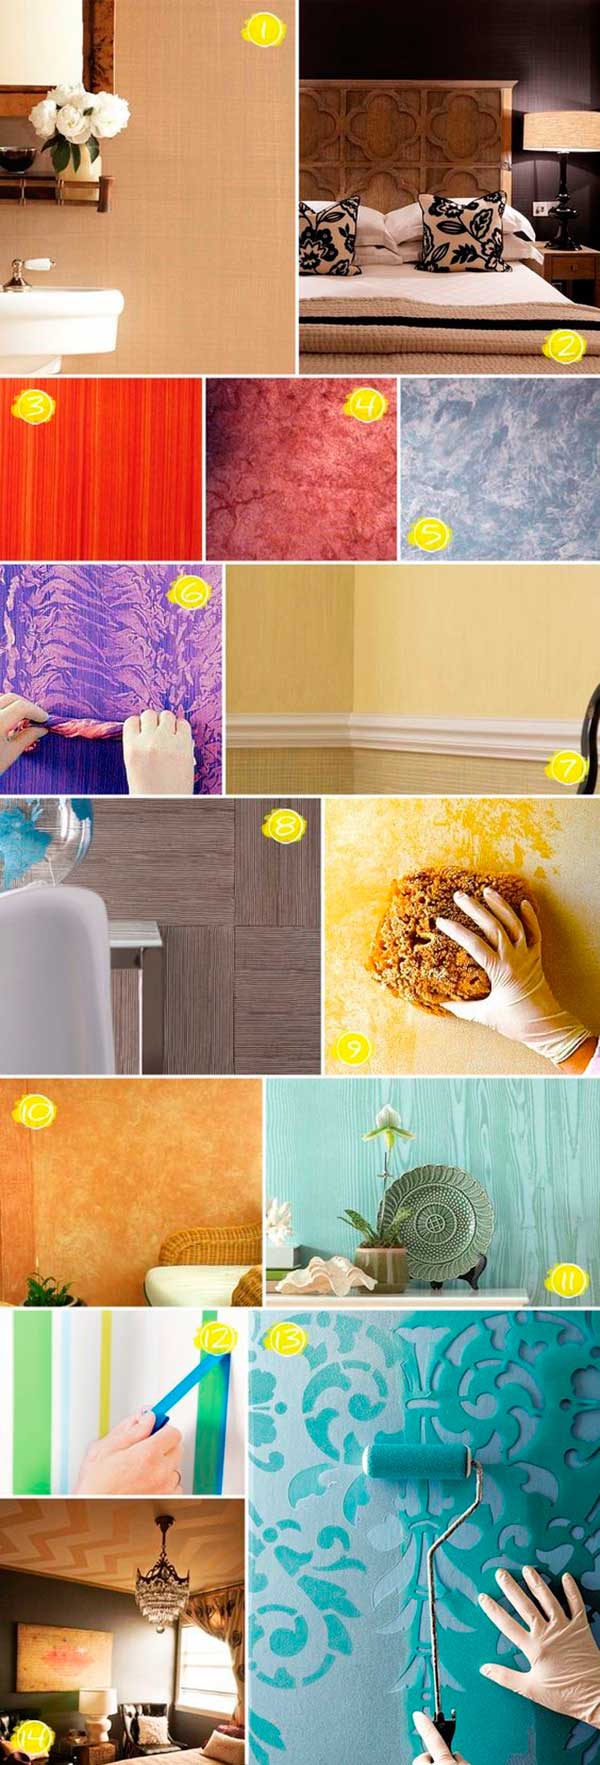 Incassa Blog - 10 ideas para pintar tus paredes y renovar tu hogar 008